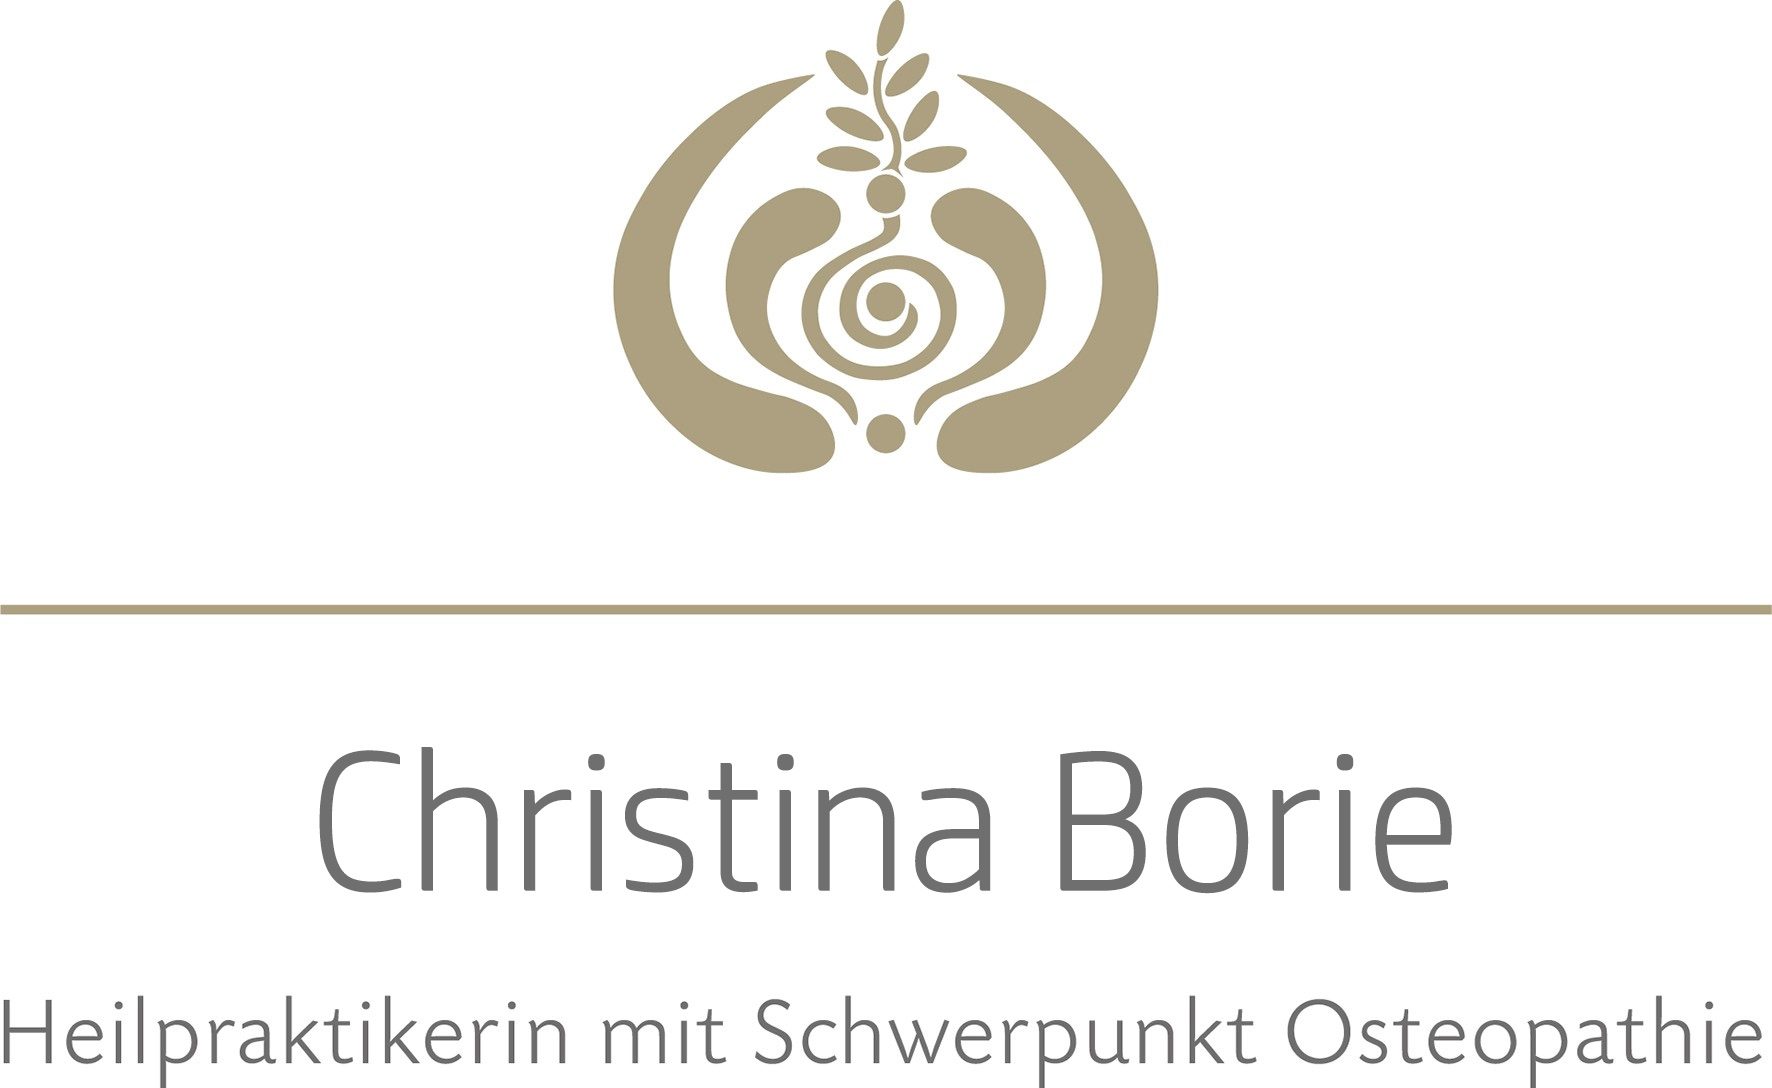 Christina Wagner Osteopathie Weinheim 